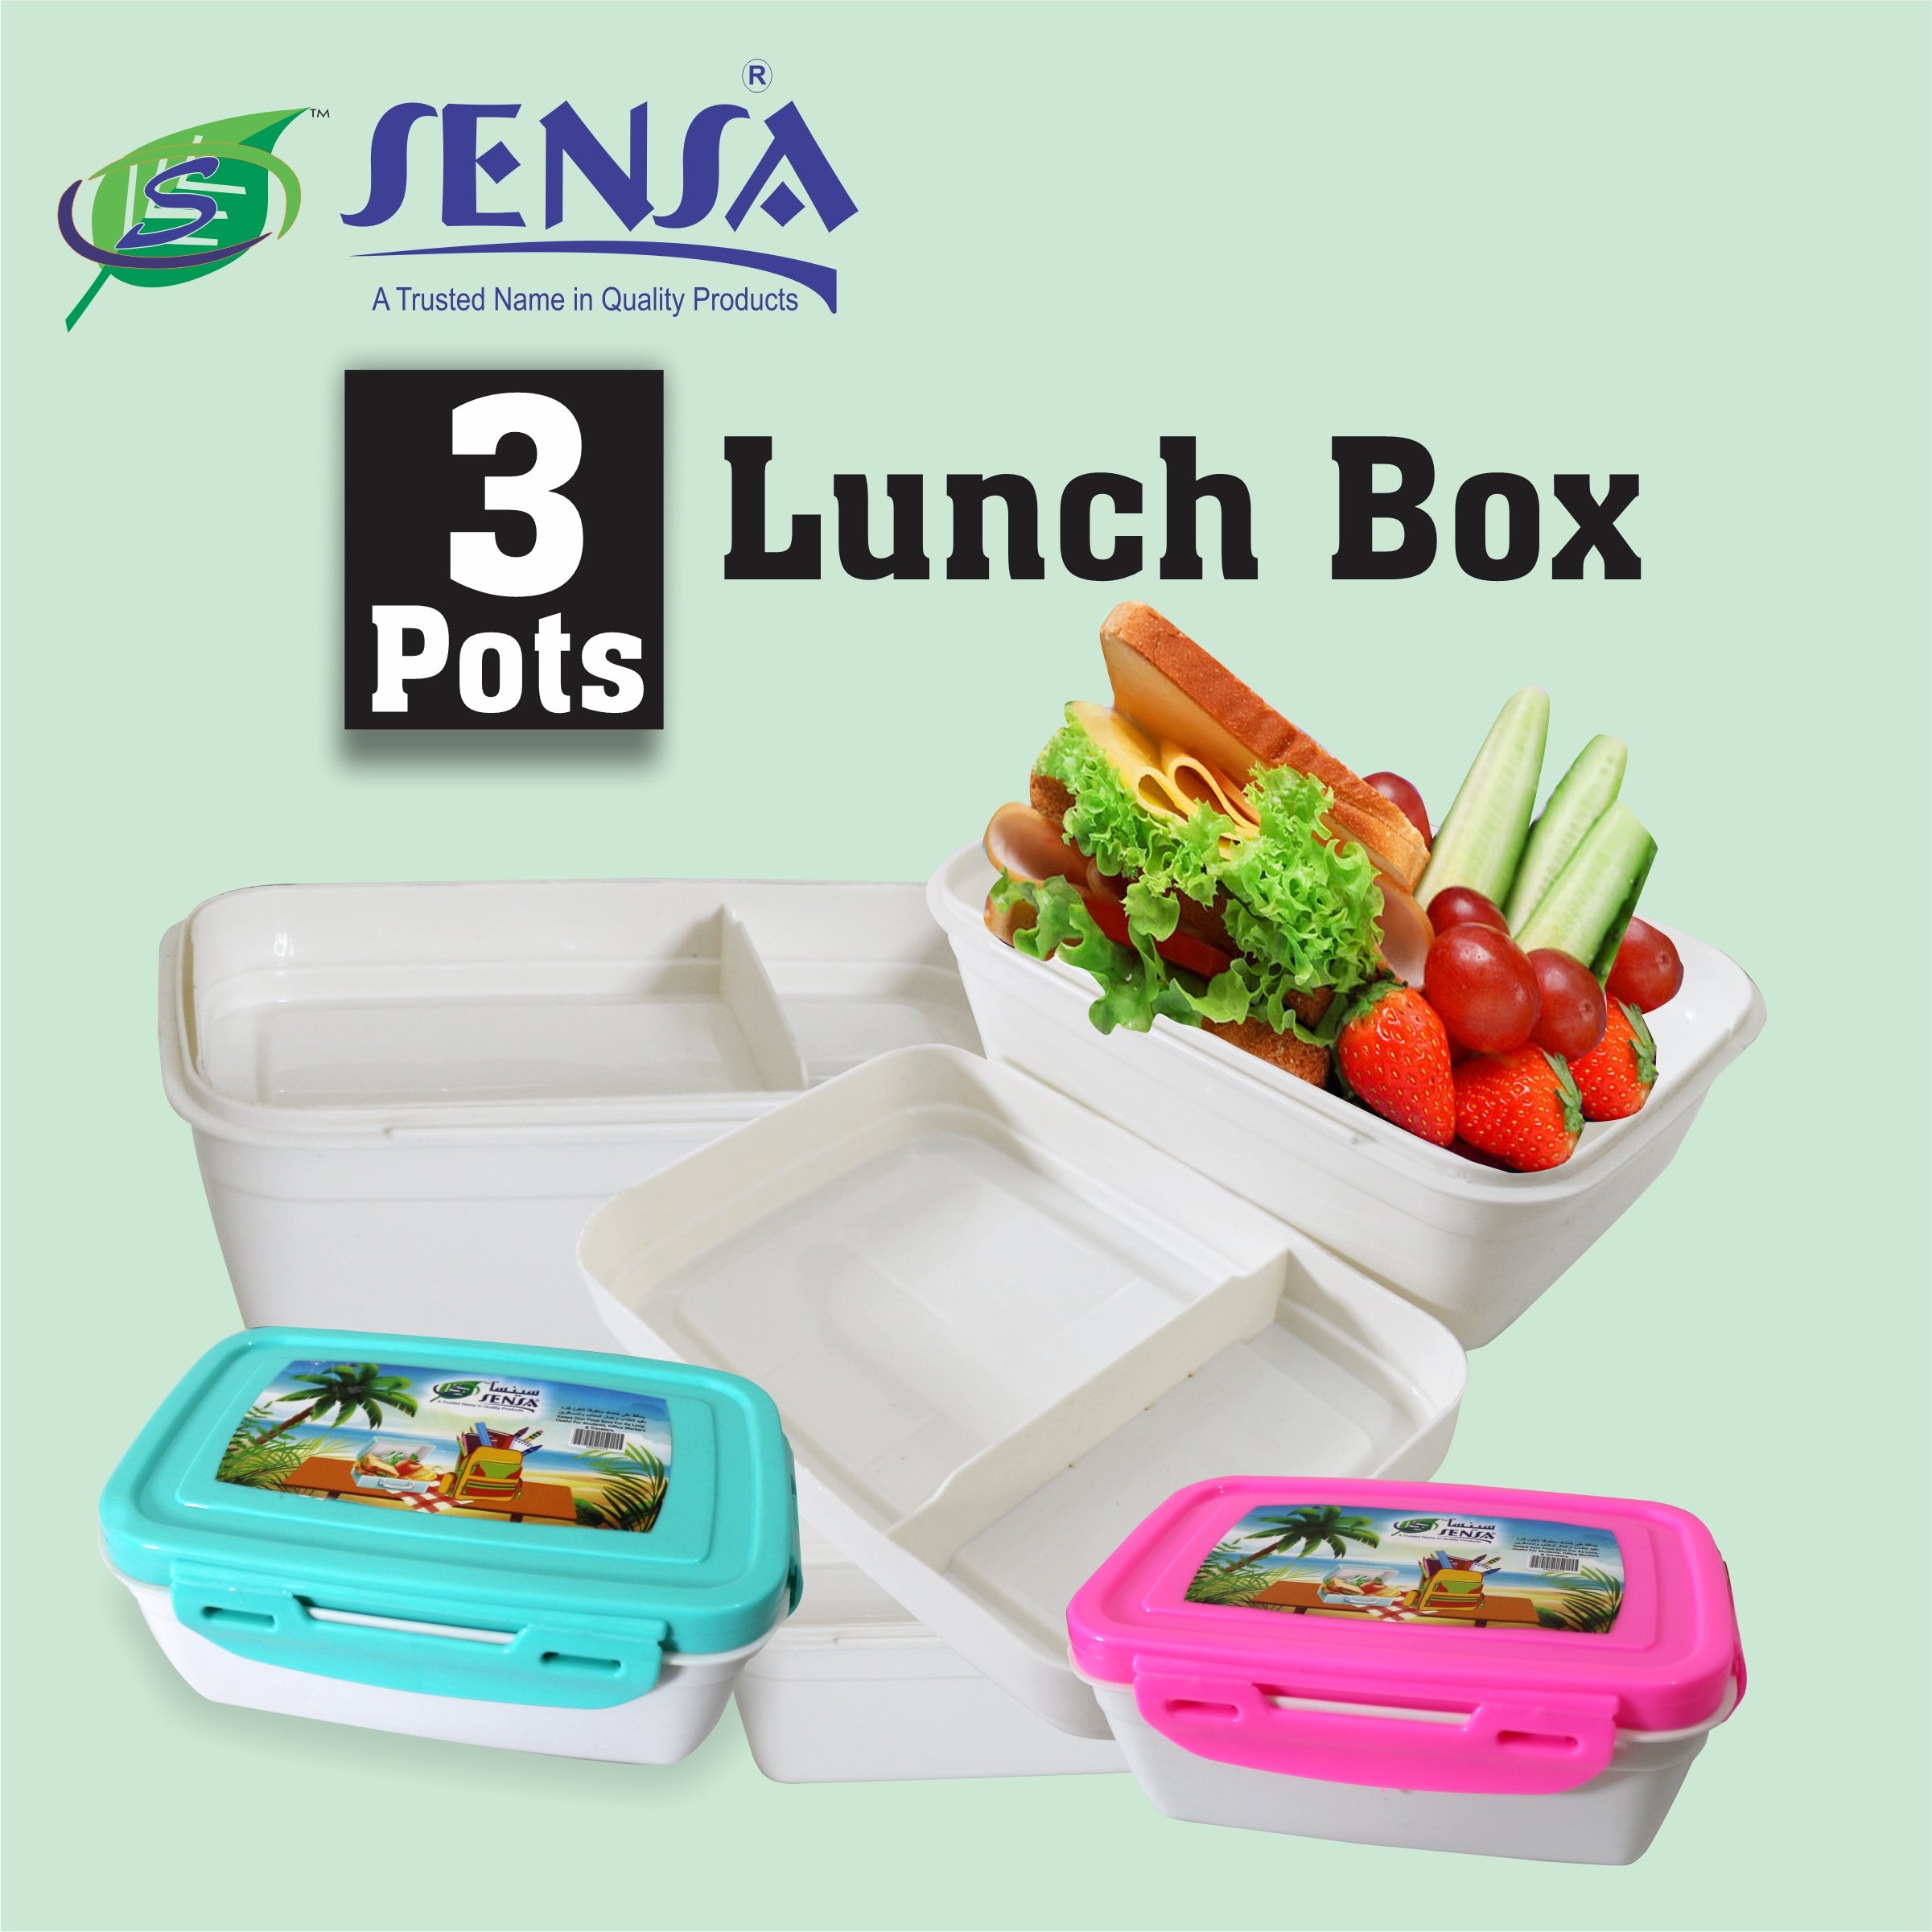 Sensa Plastic Lunch Box 3 Pots